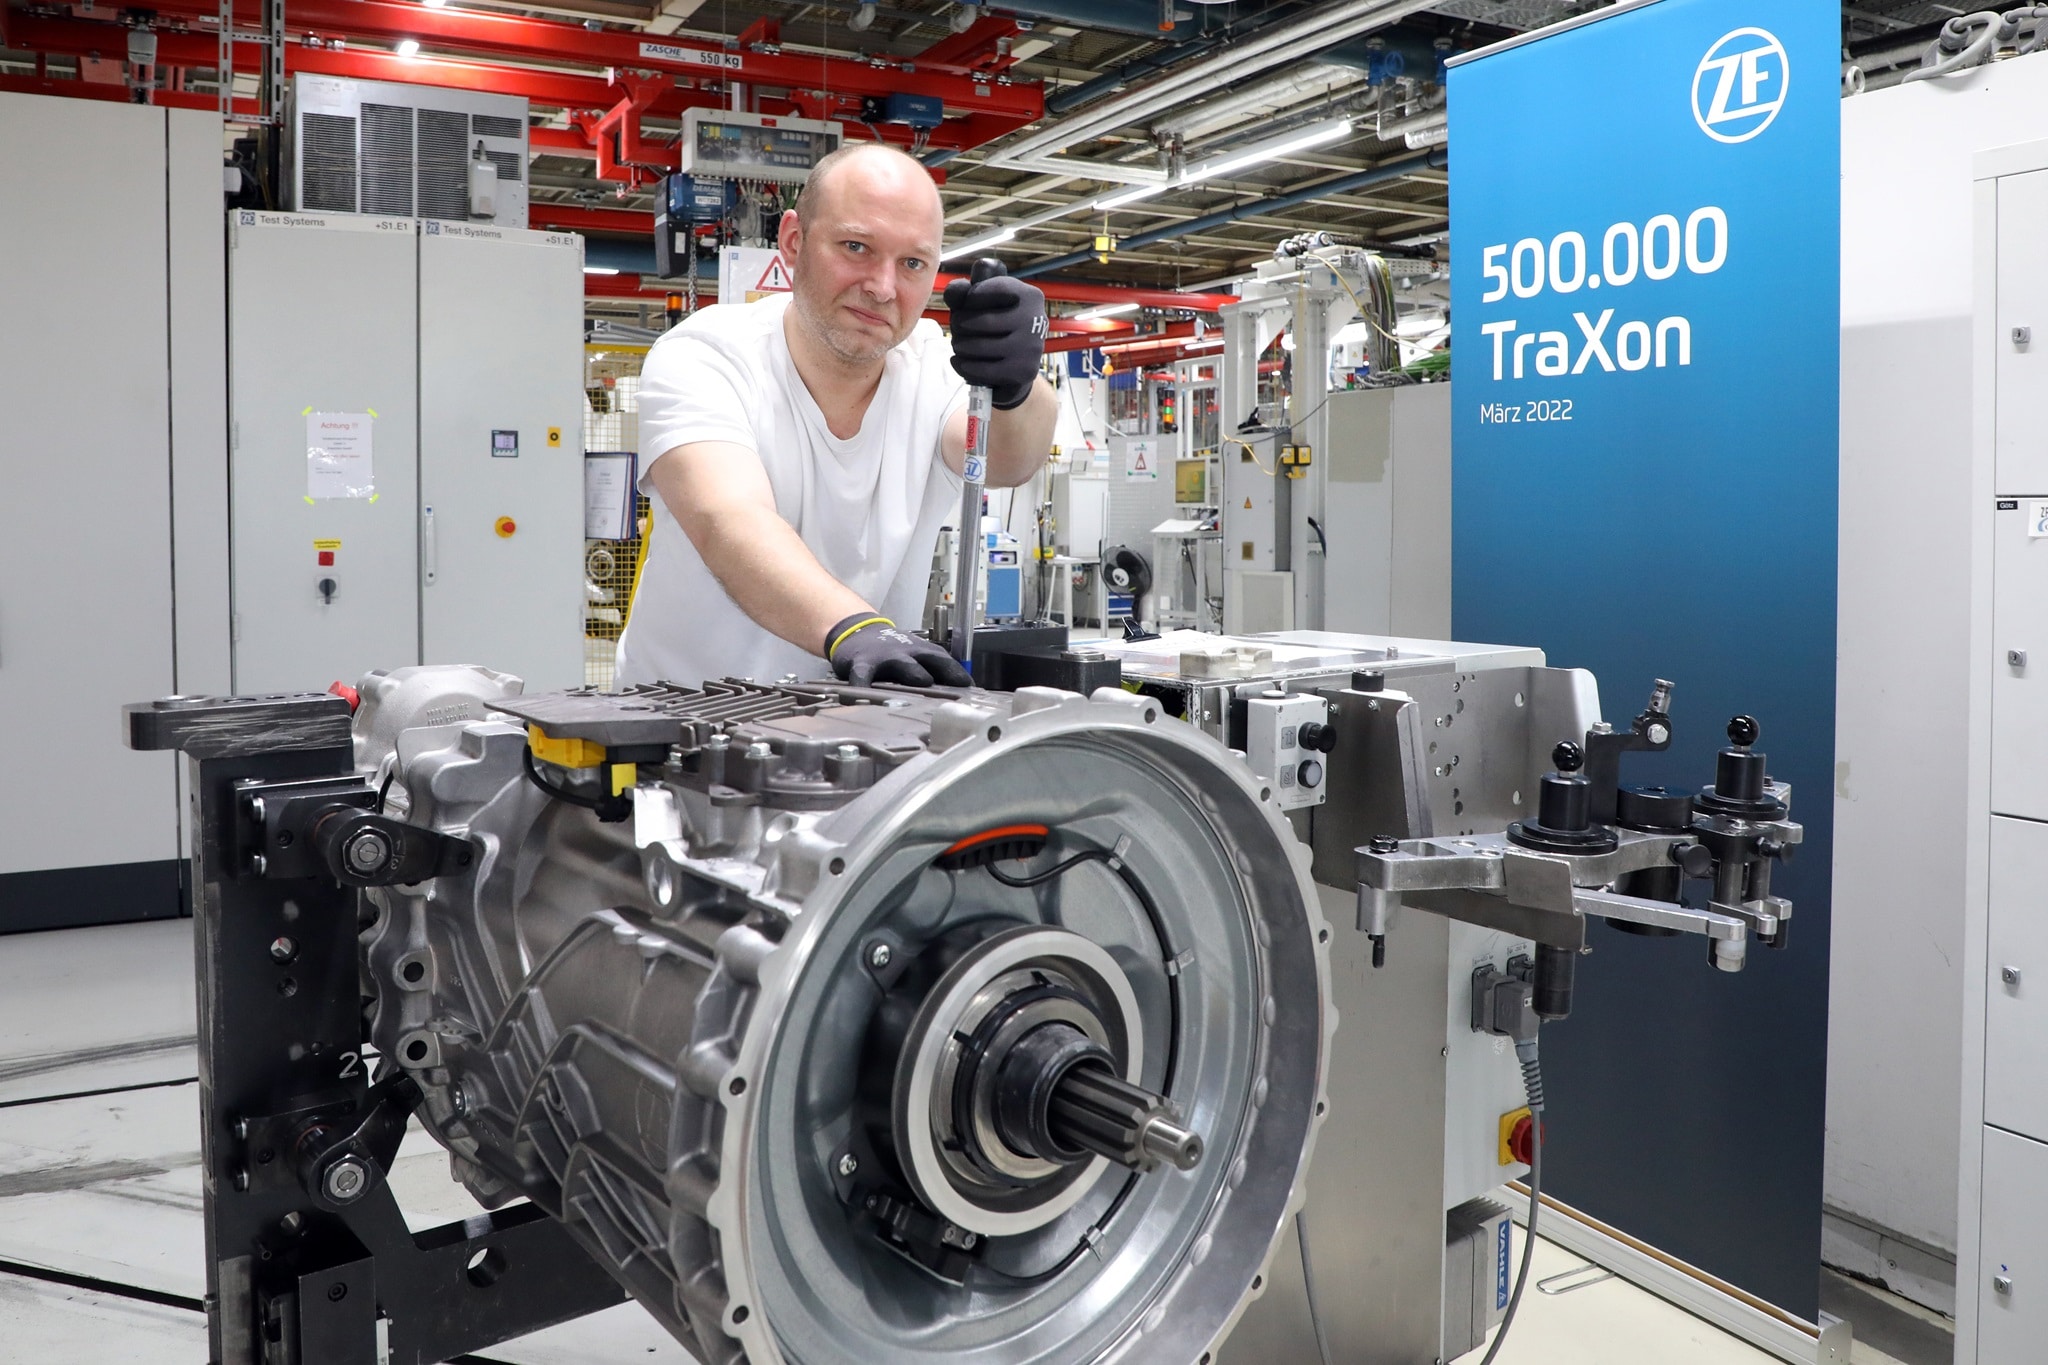 ZF Traxon 500,000th unit produced in Friedrichshafen